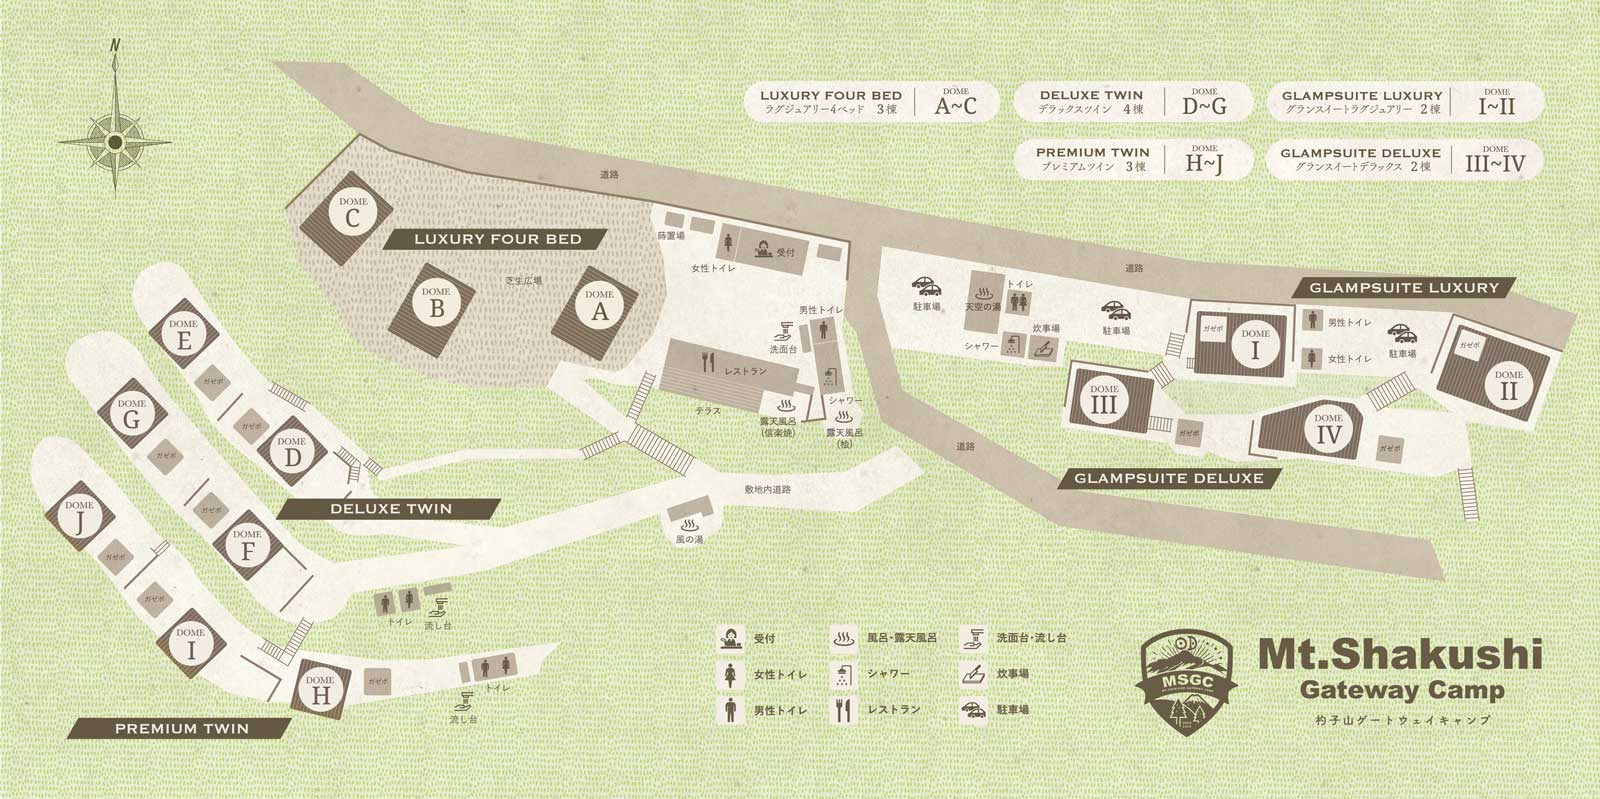 杓子山ゲートウェイキャンプマップ